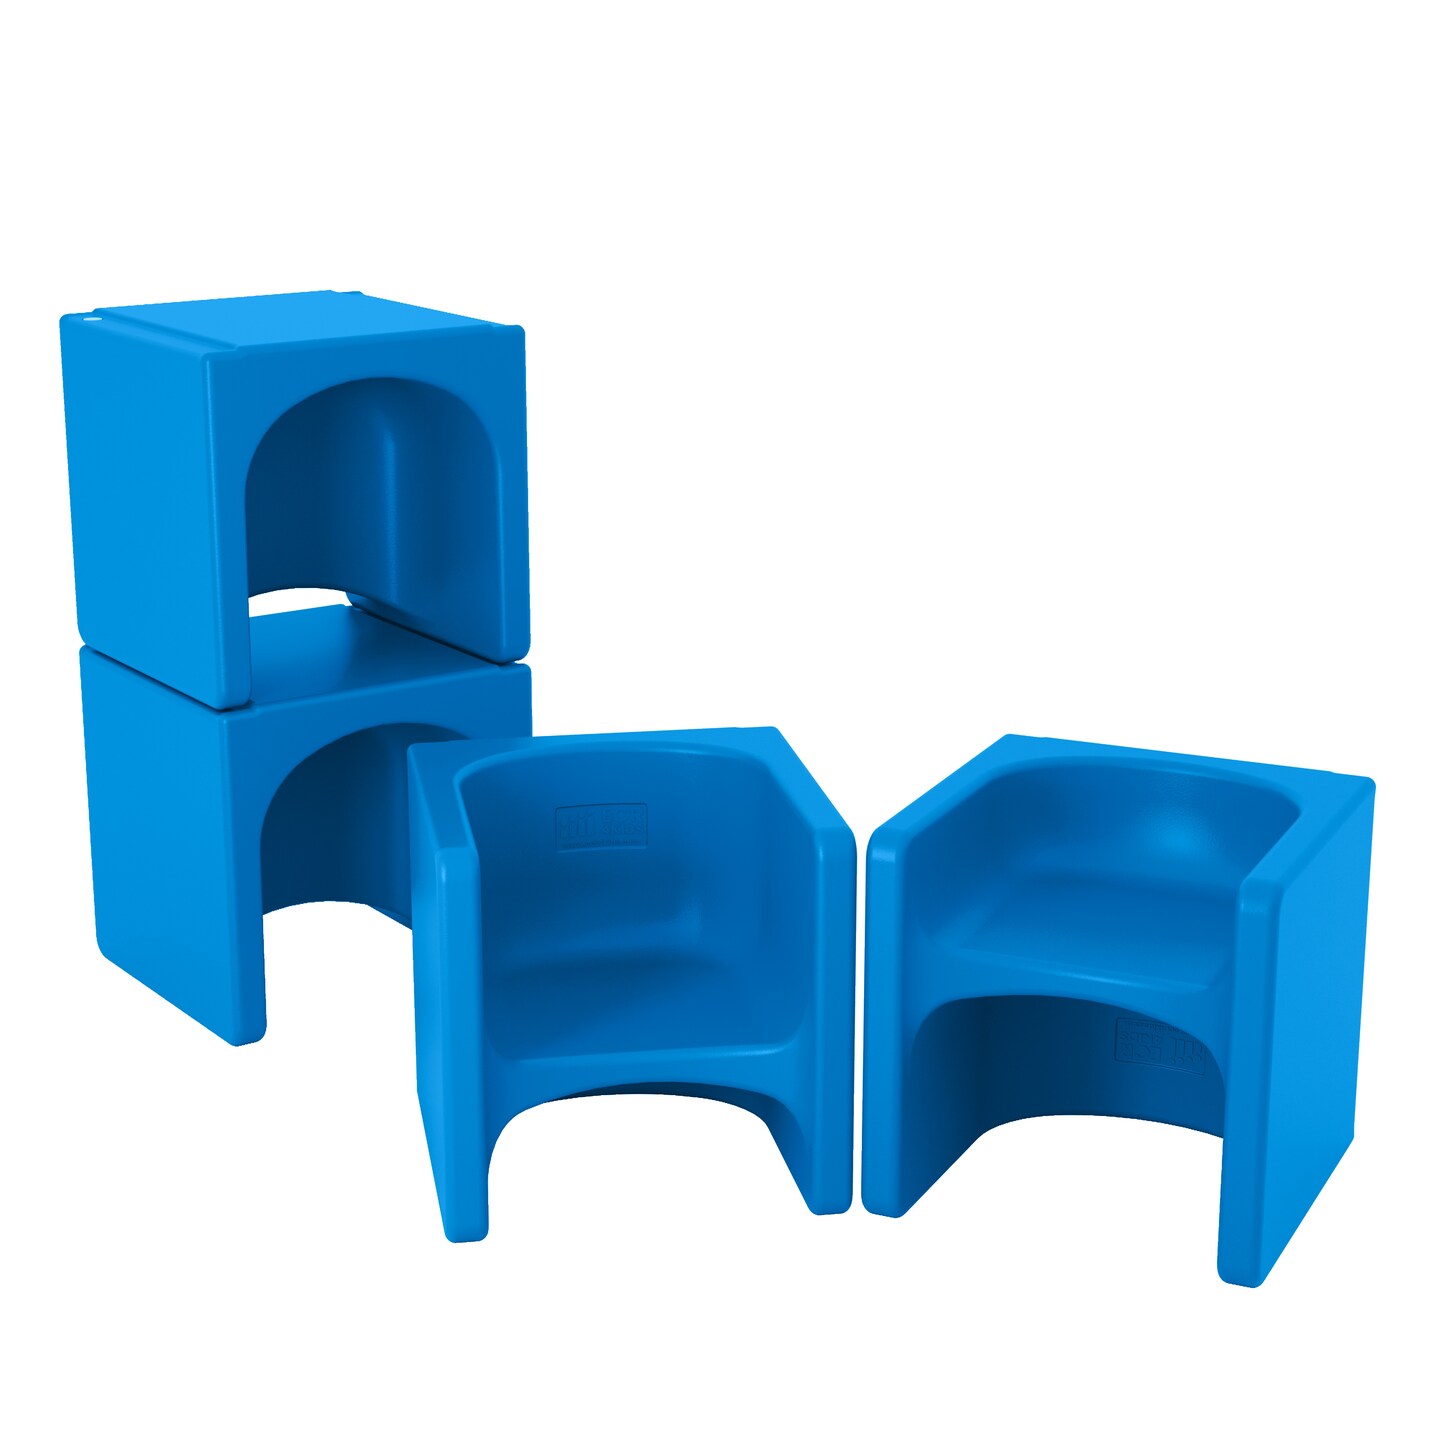 Tri-Me 3-In-1 Cube Chair, Kids Furniture, 4-Piece